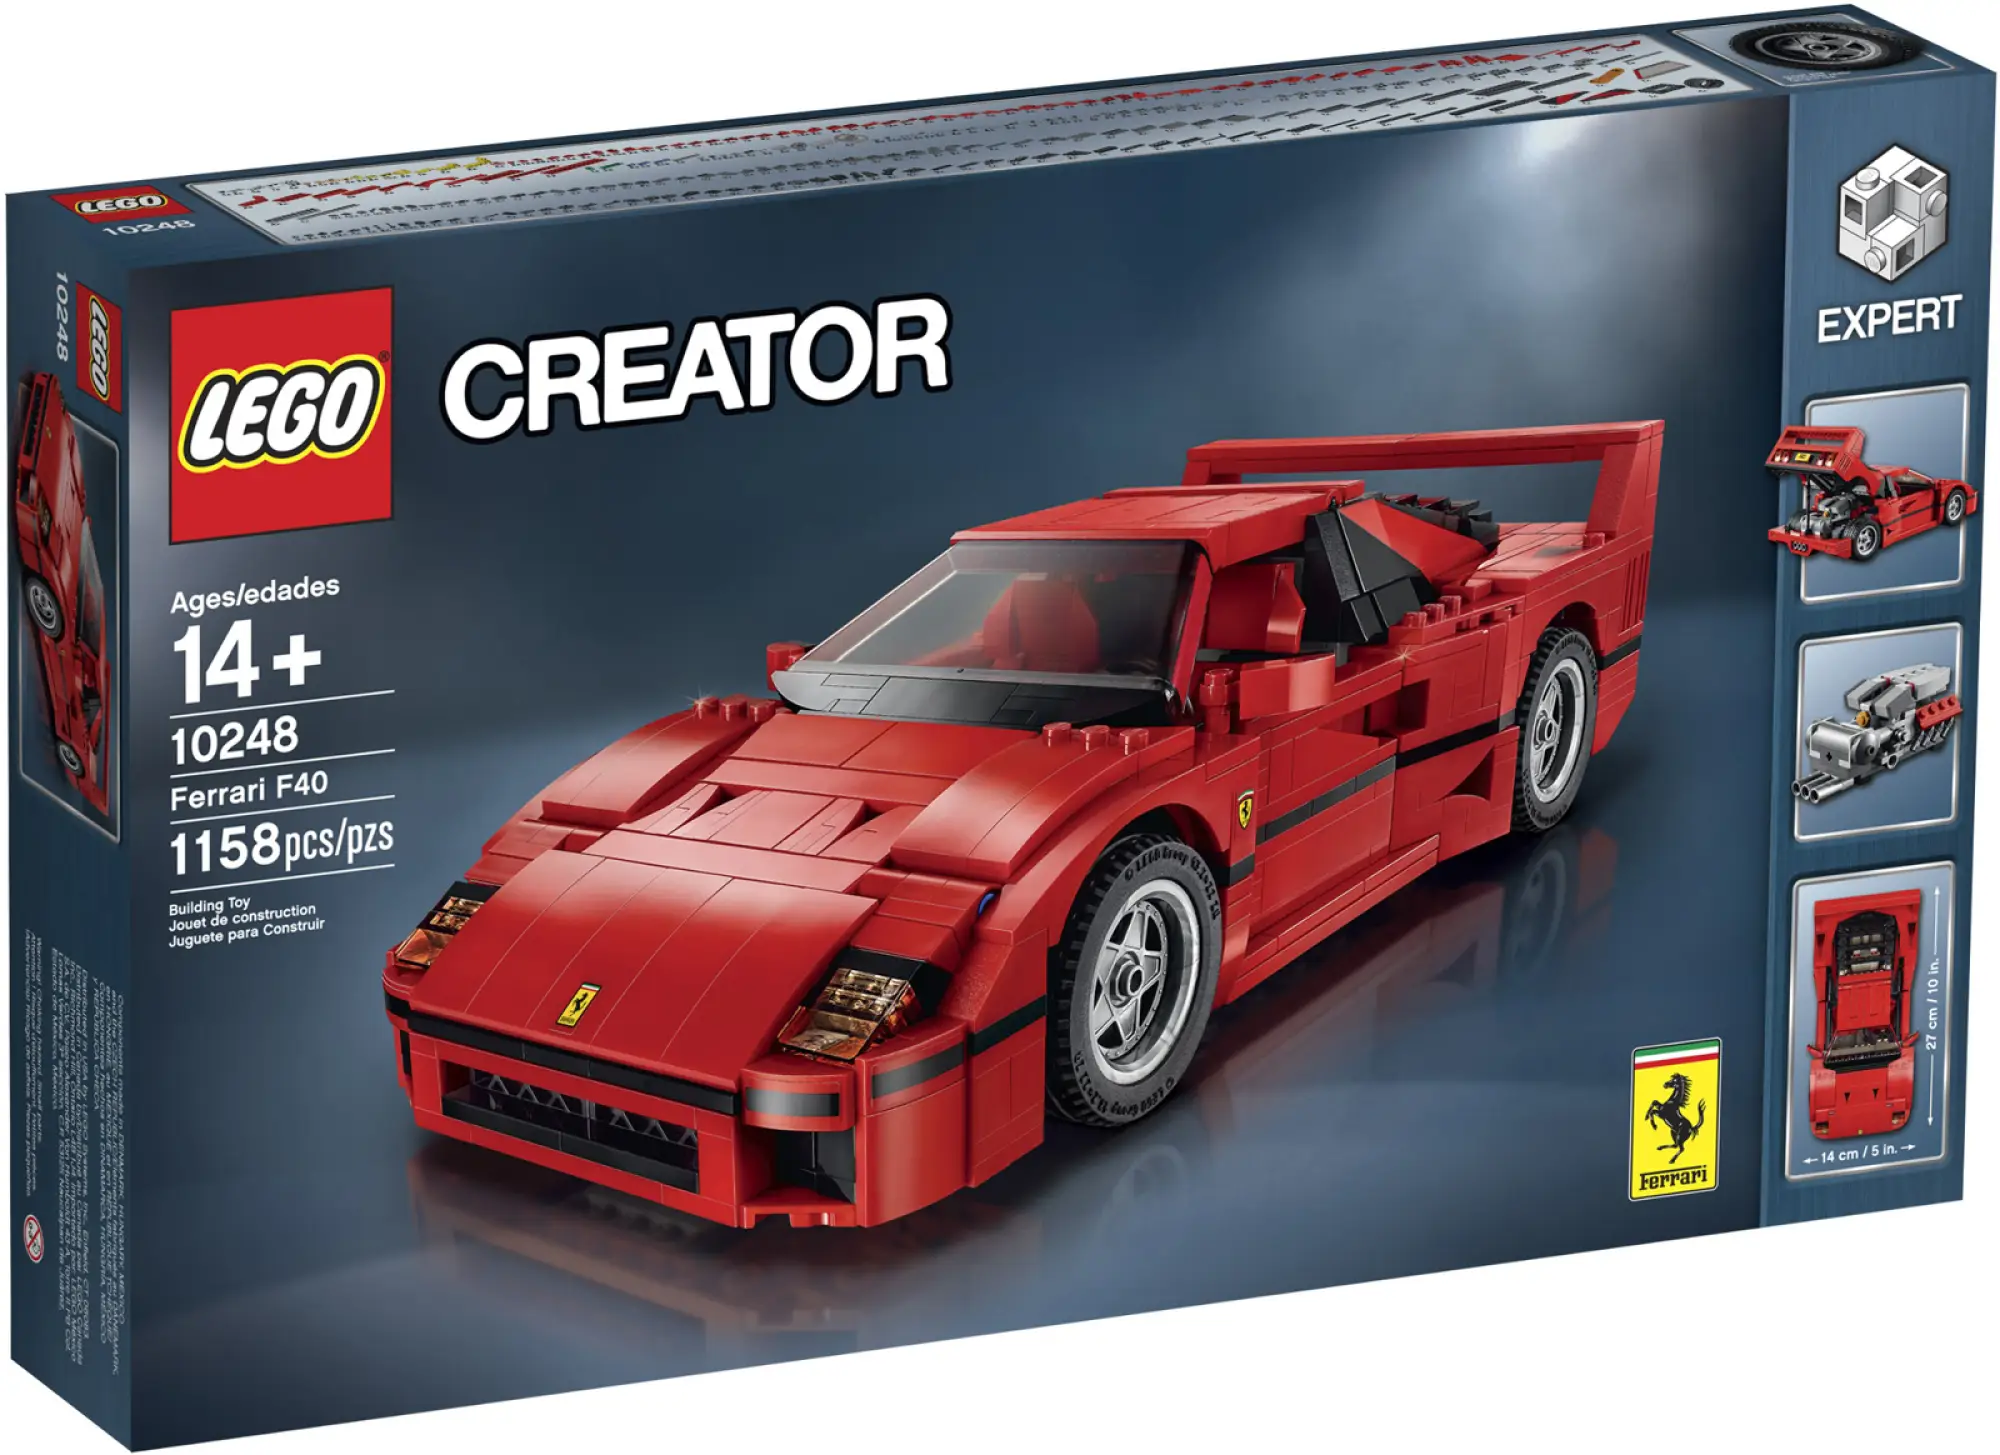 Ferrari F40 - Modellino in Lego - 6